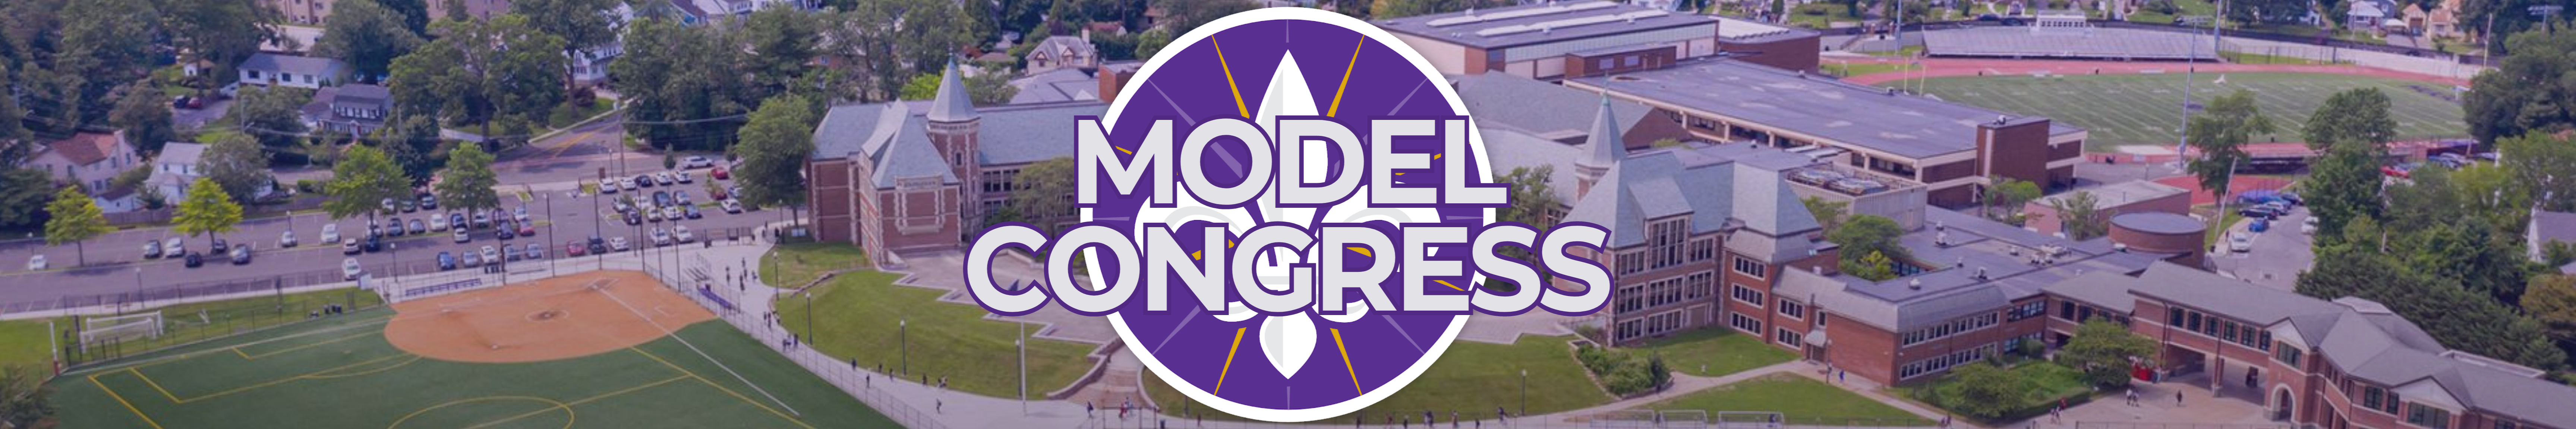 Model Congress banner